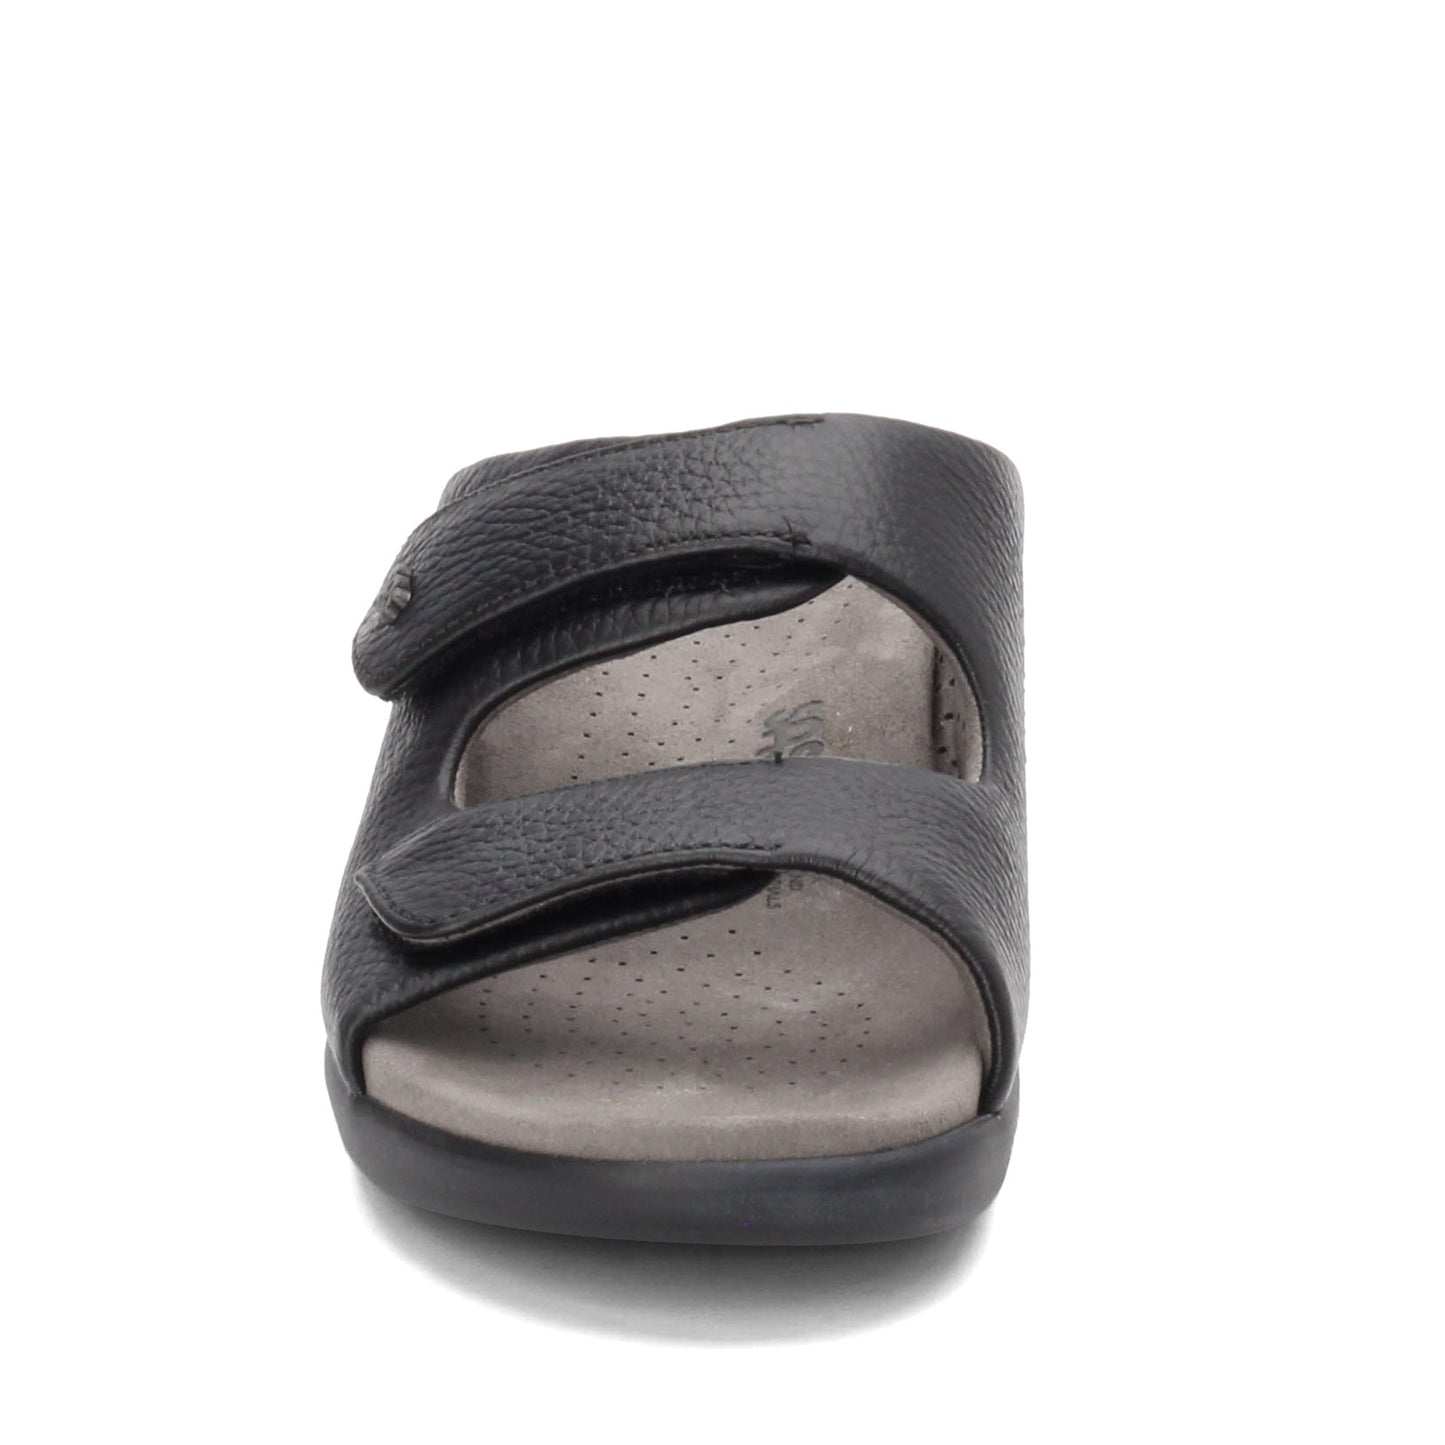 Peltz Shoes  Women's SAS Cozy Slide Sandal BLACK COZY BLACK